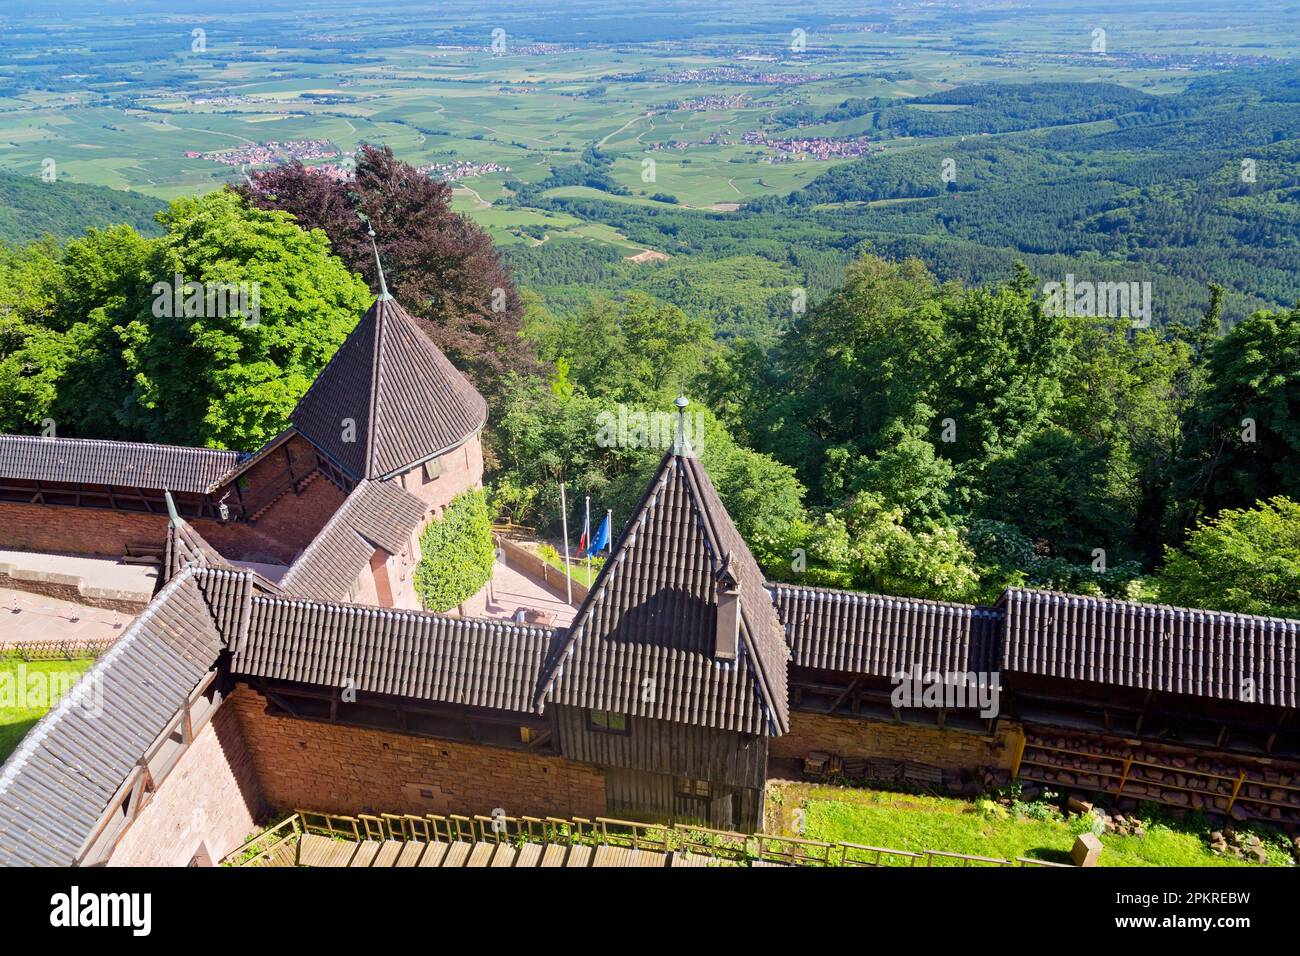 Château du Haut-Koenigsbourg, Alsace, France Banque D'Images